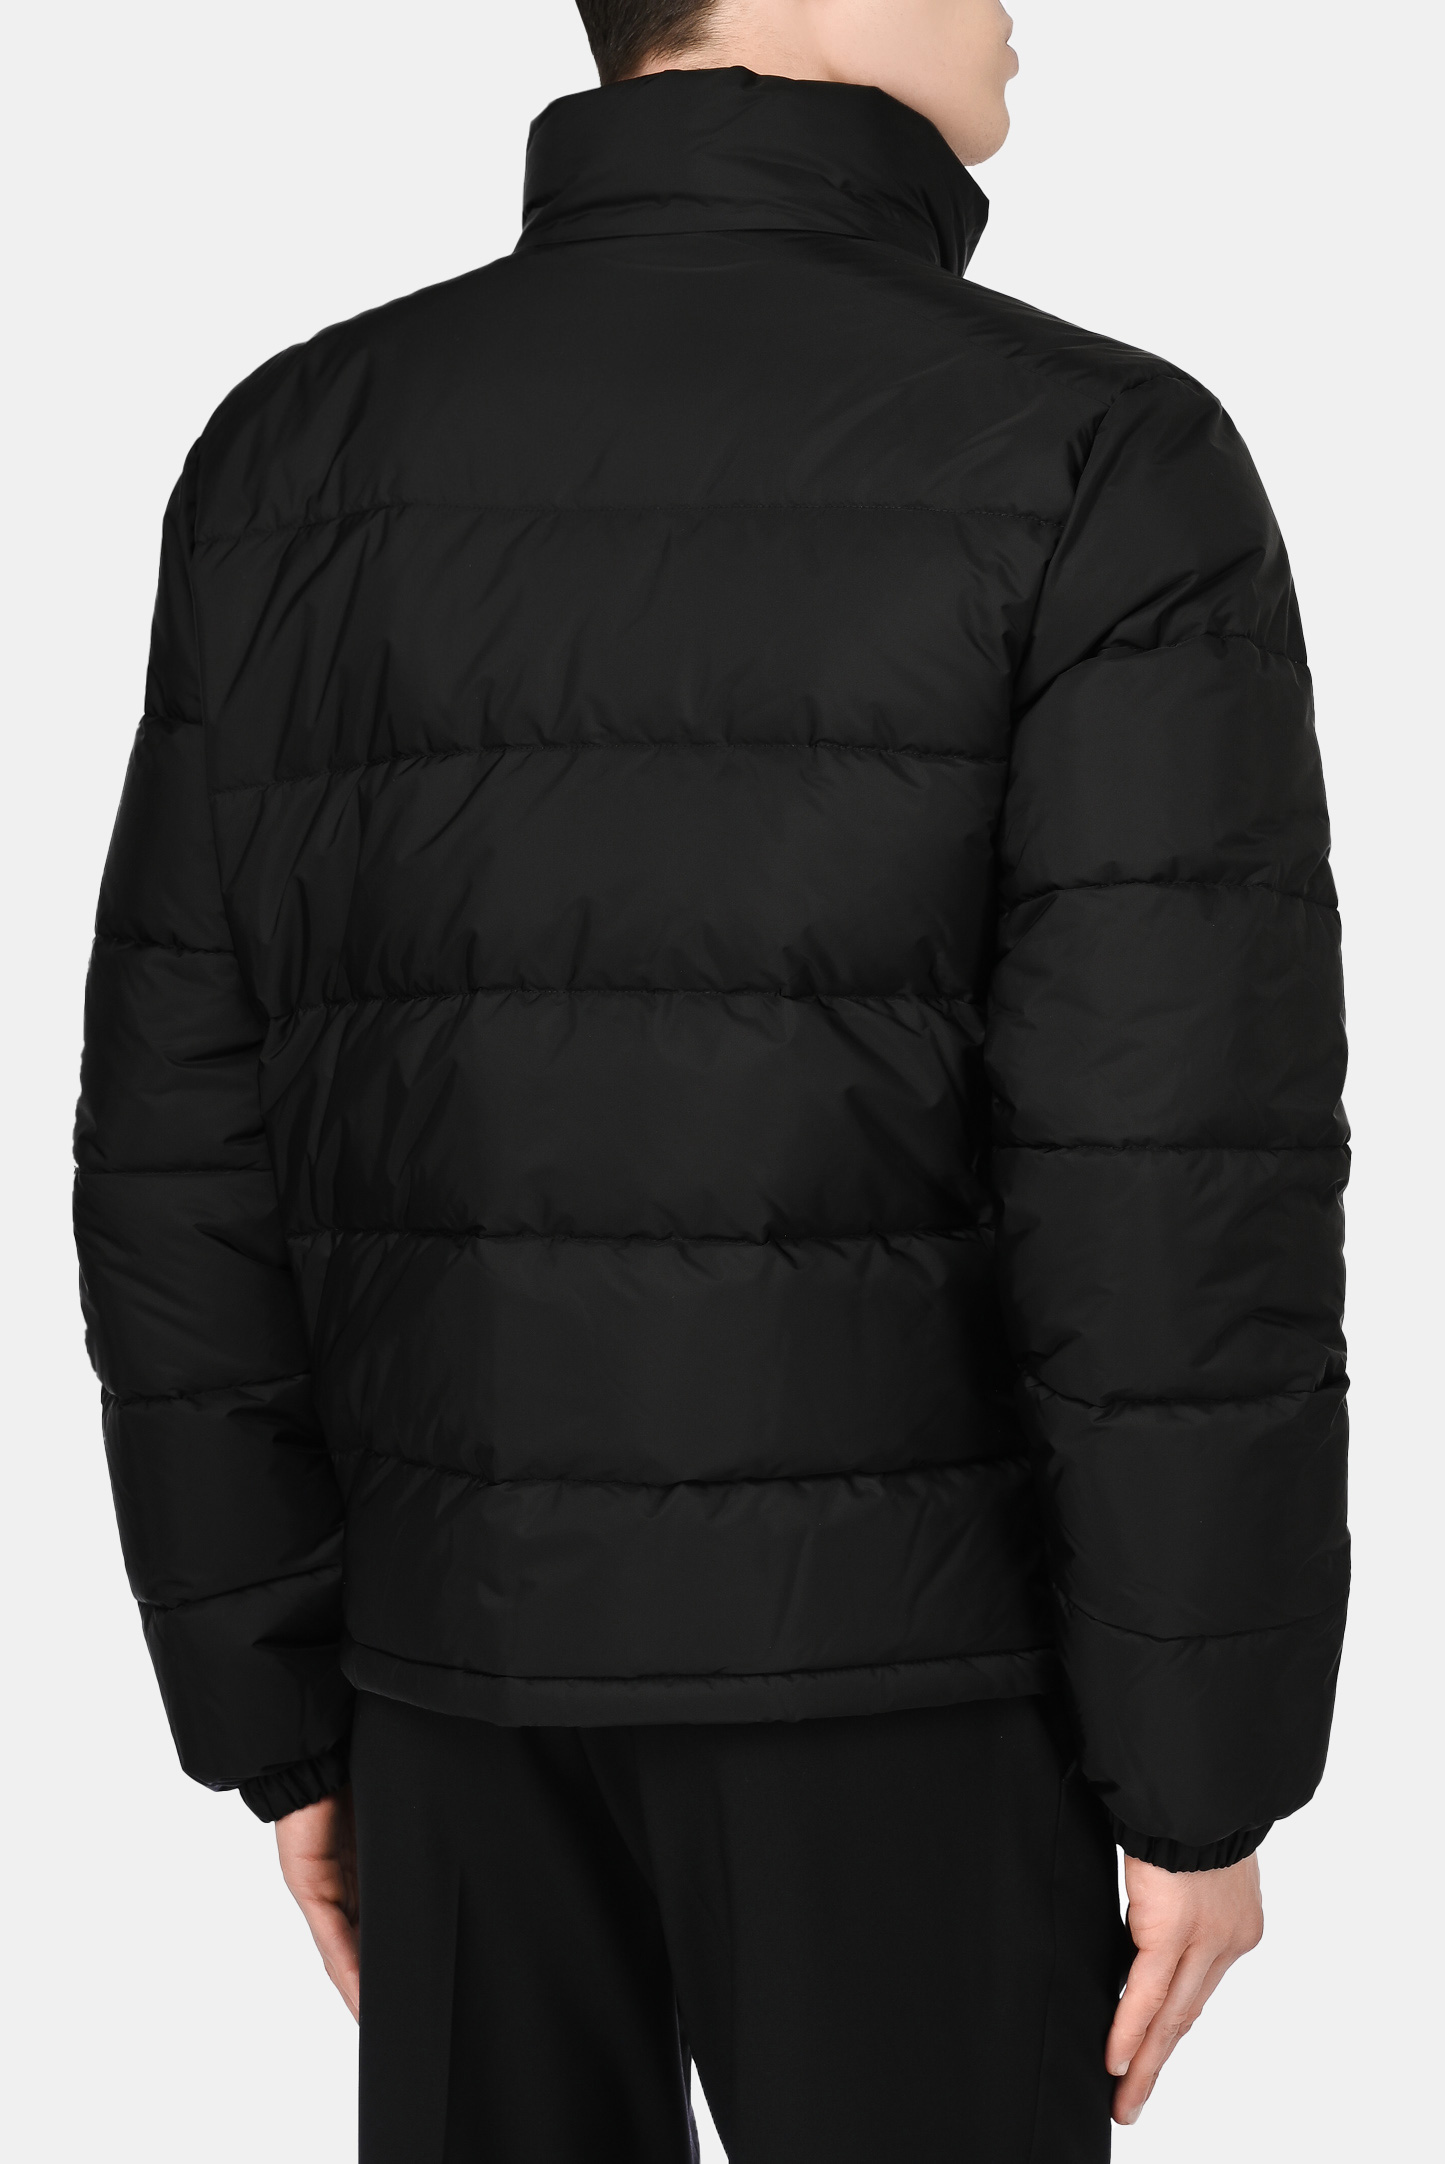 Куртка PRADA SGB702 S 202, цвет: Черный, Мужской